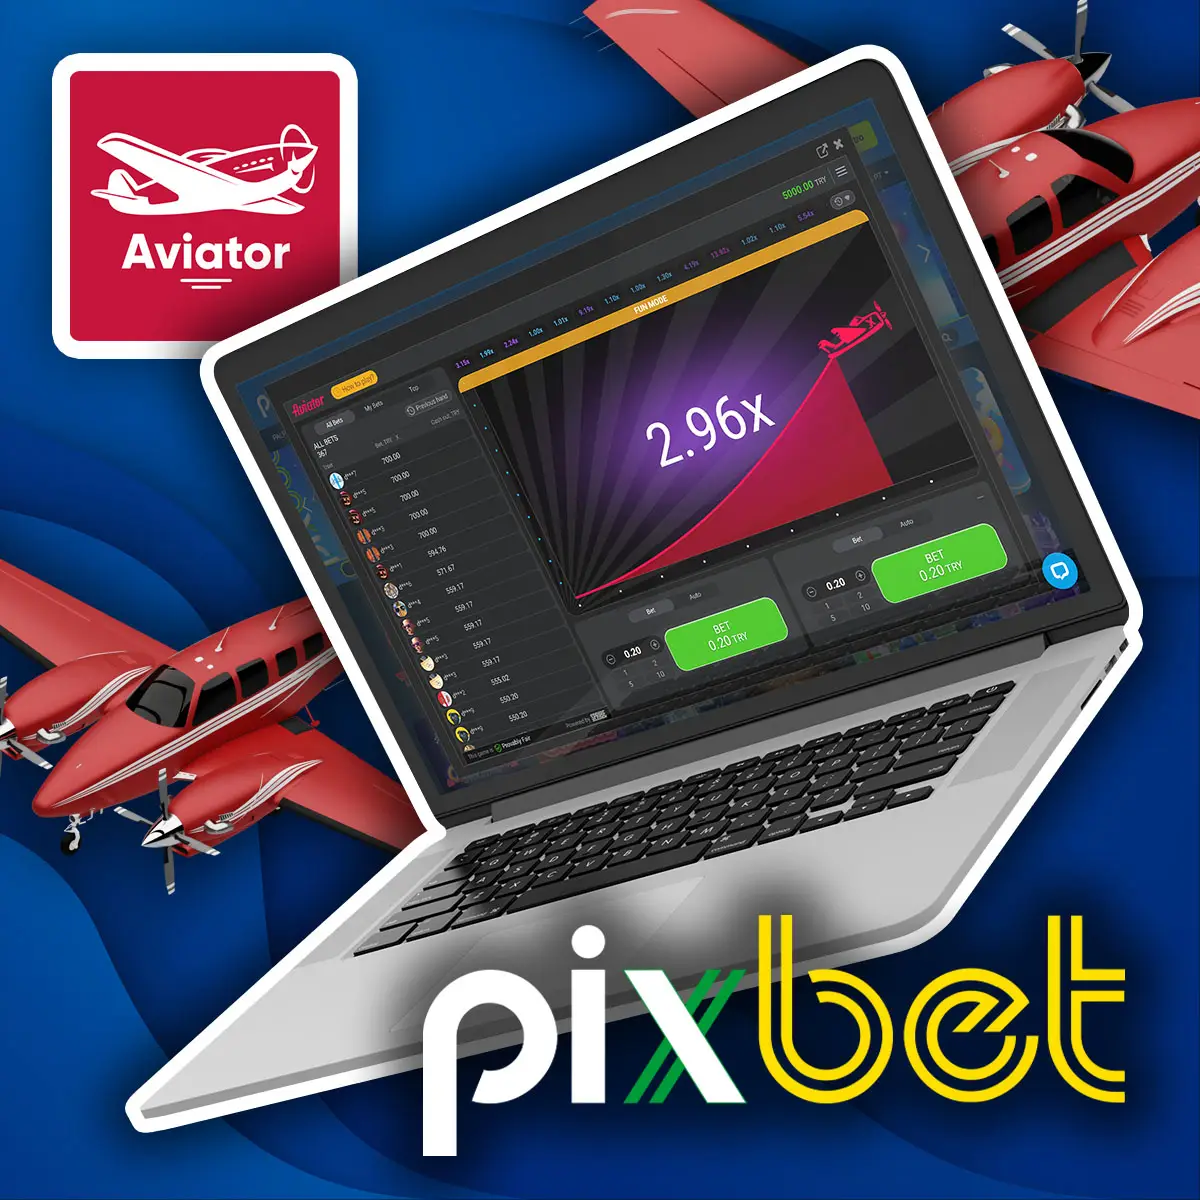 Análise completa do jogo Aviator da Pixbet no Brasil